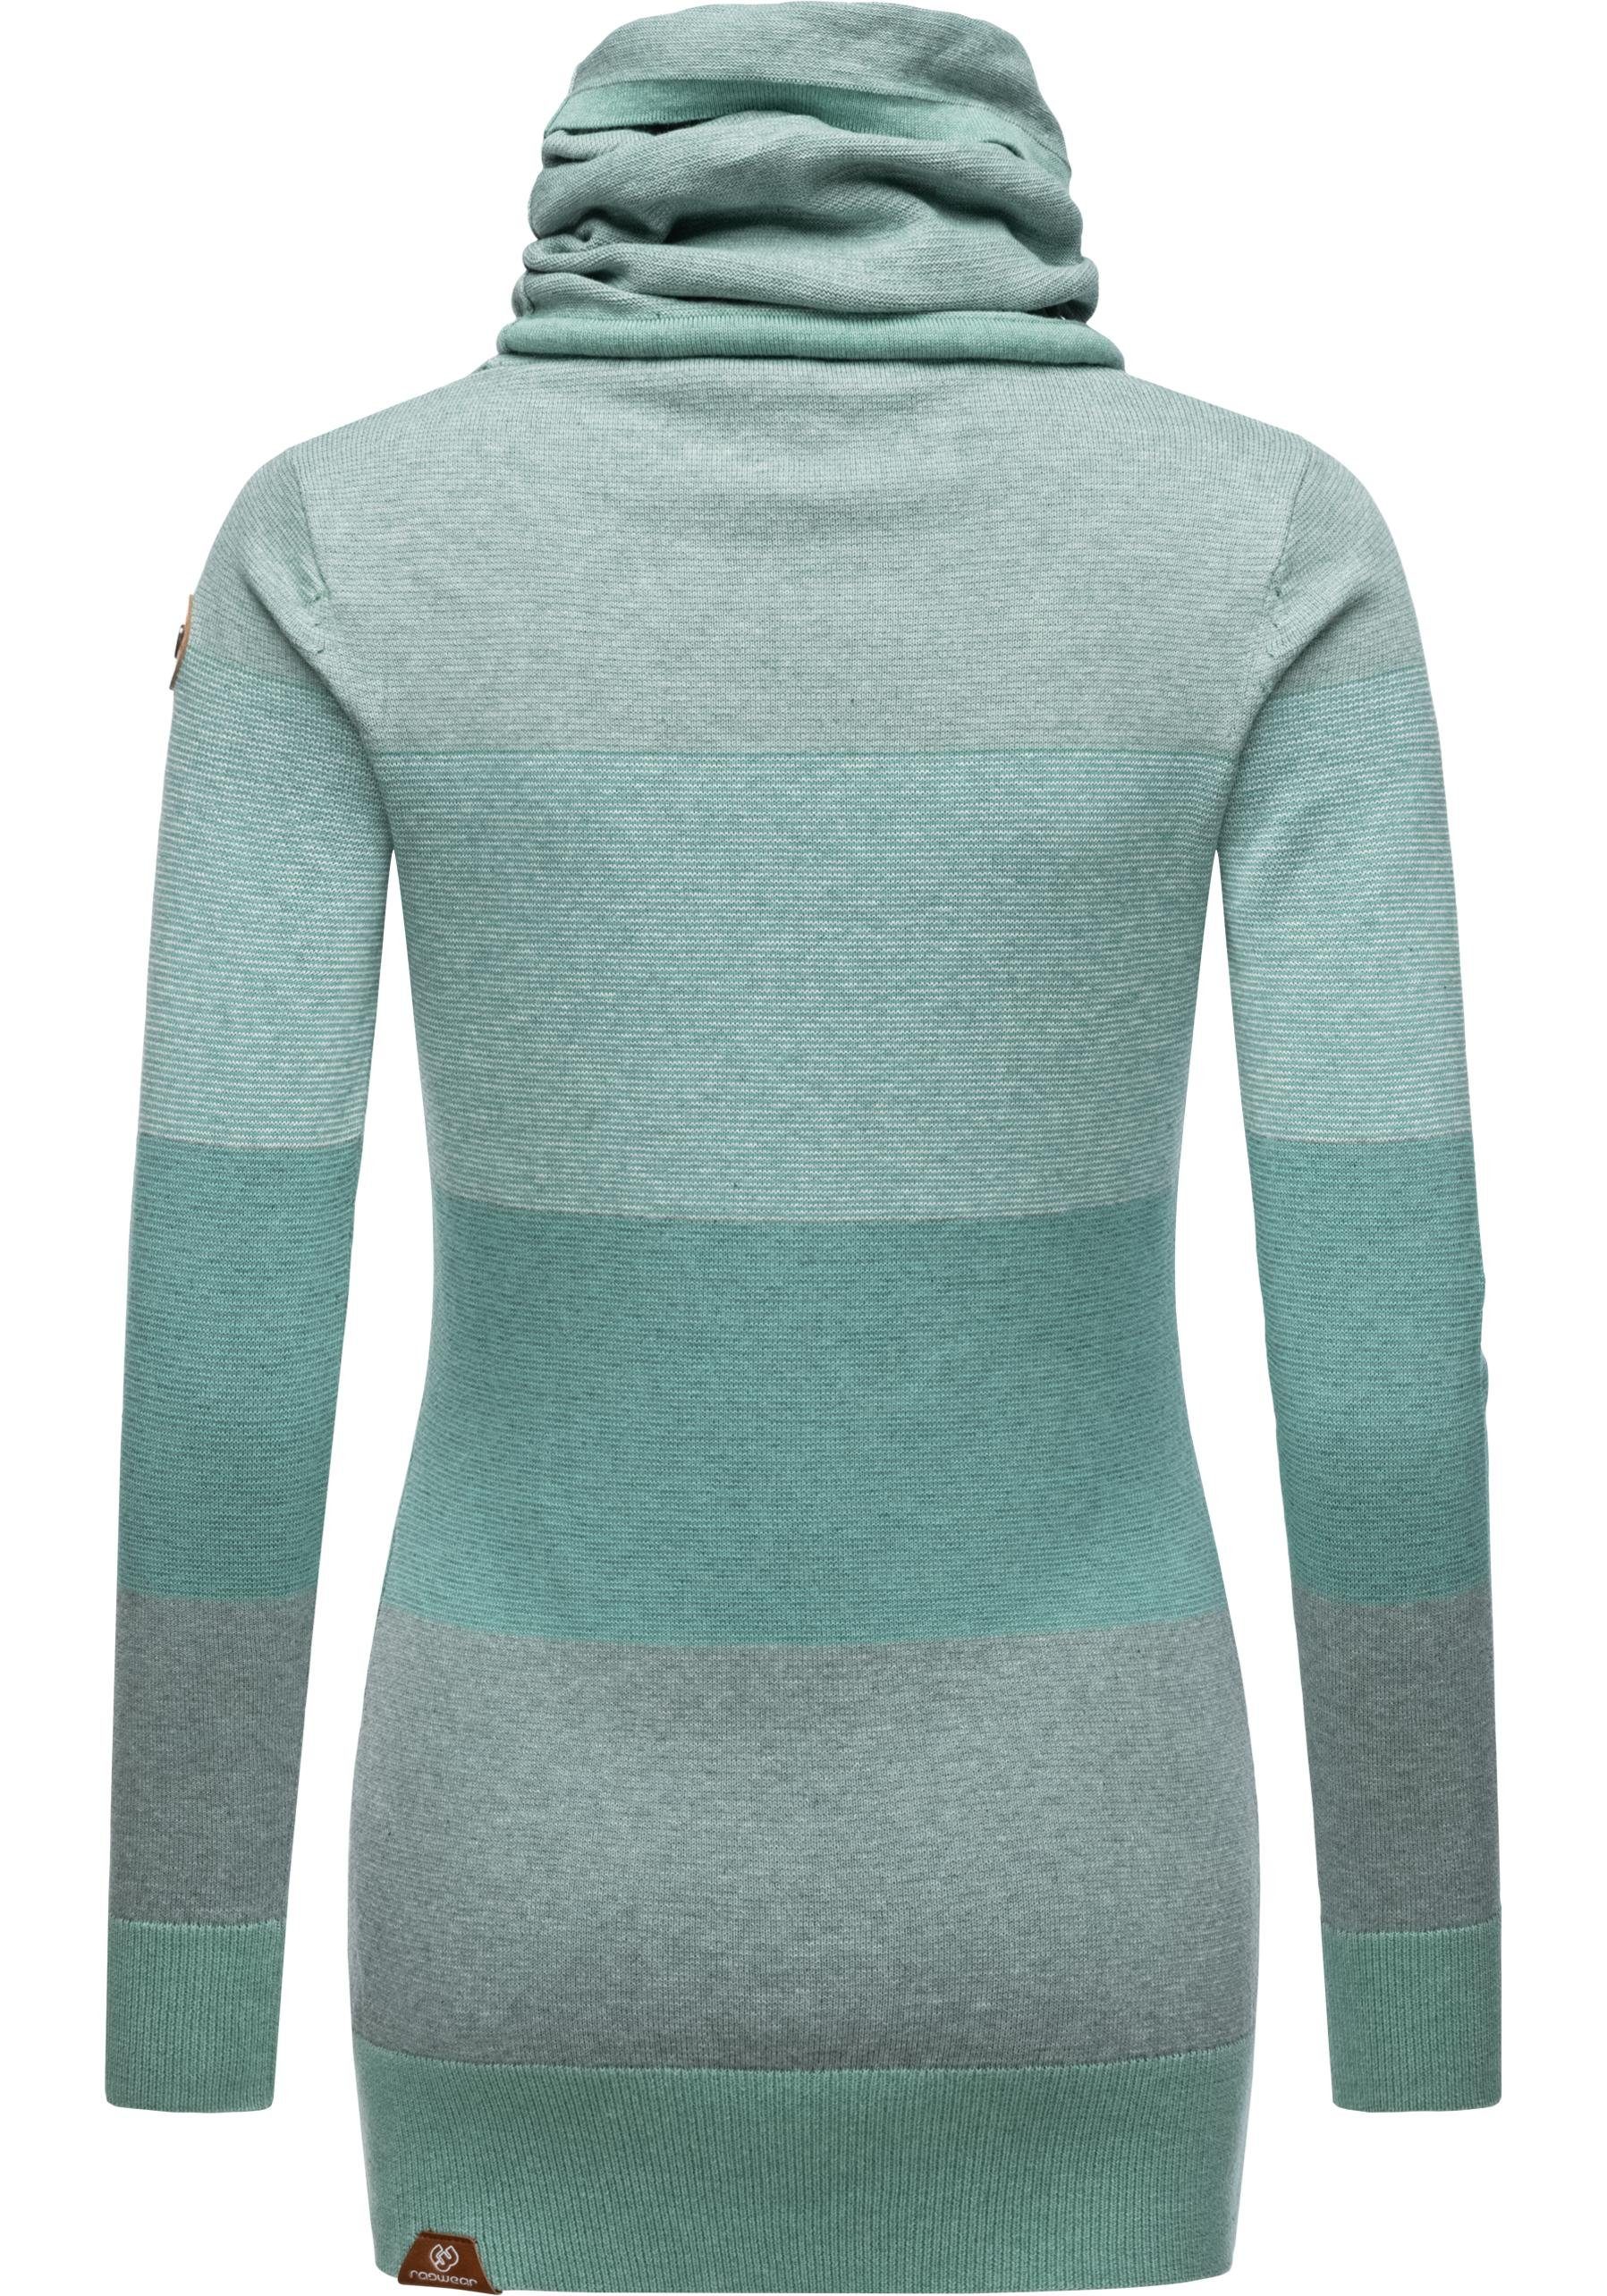 Streifenmuster Ragwear Langarm-Sweatshirt grün mit stylisches Damen Babett Sweater Stripes